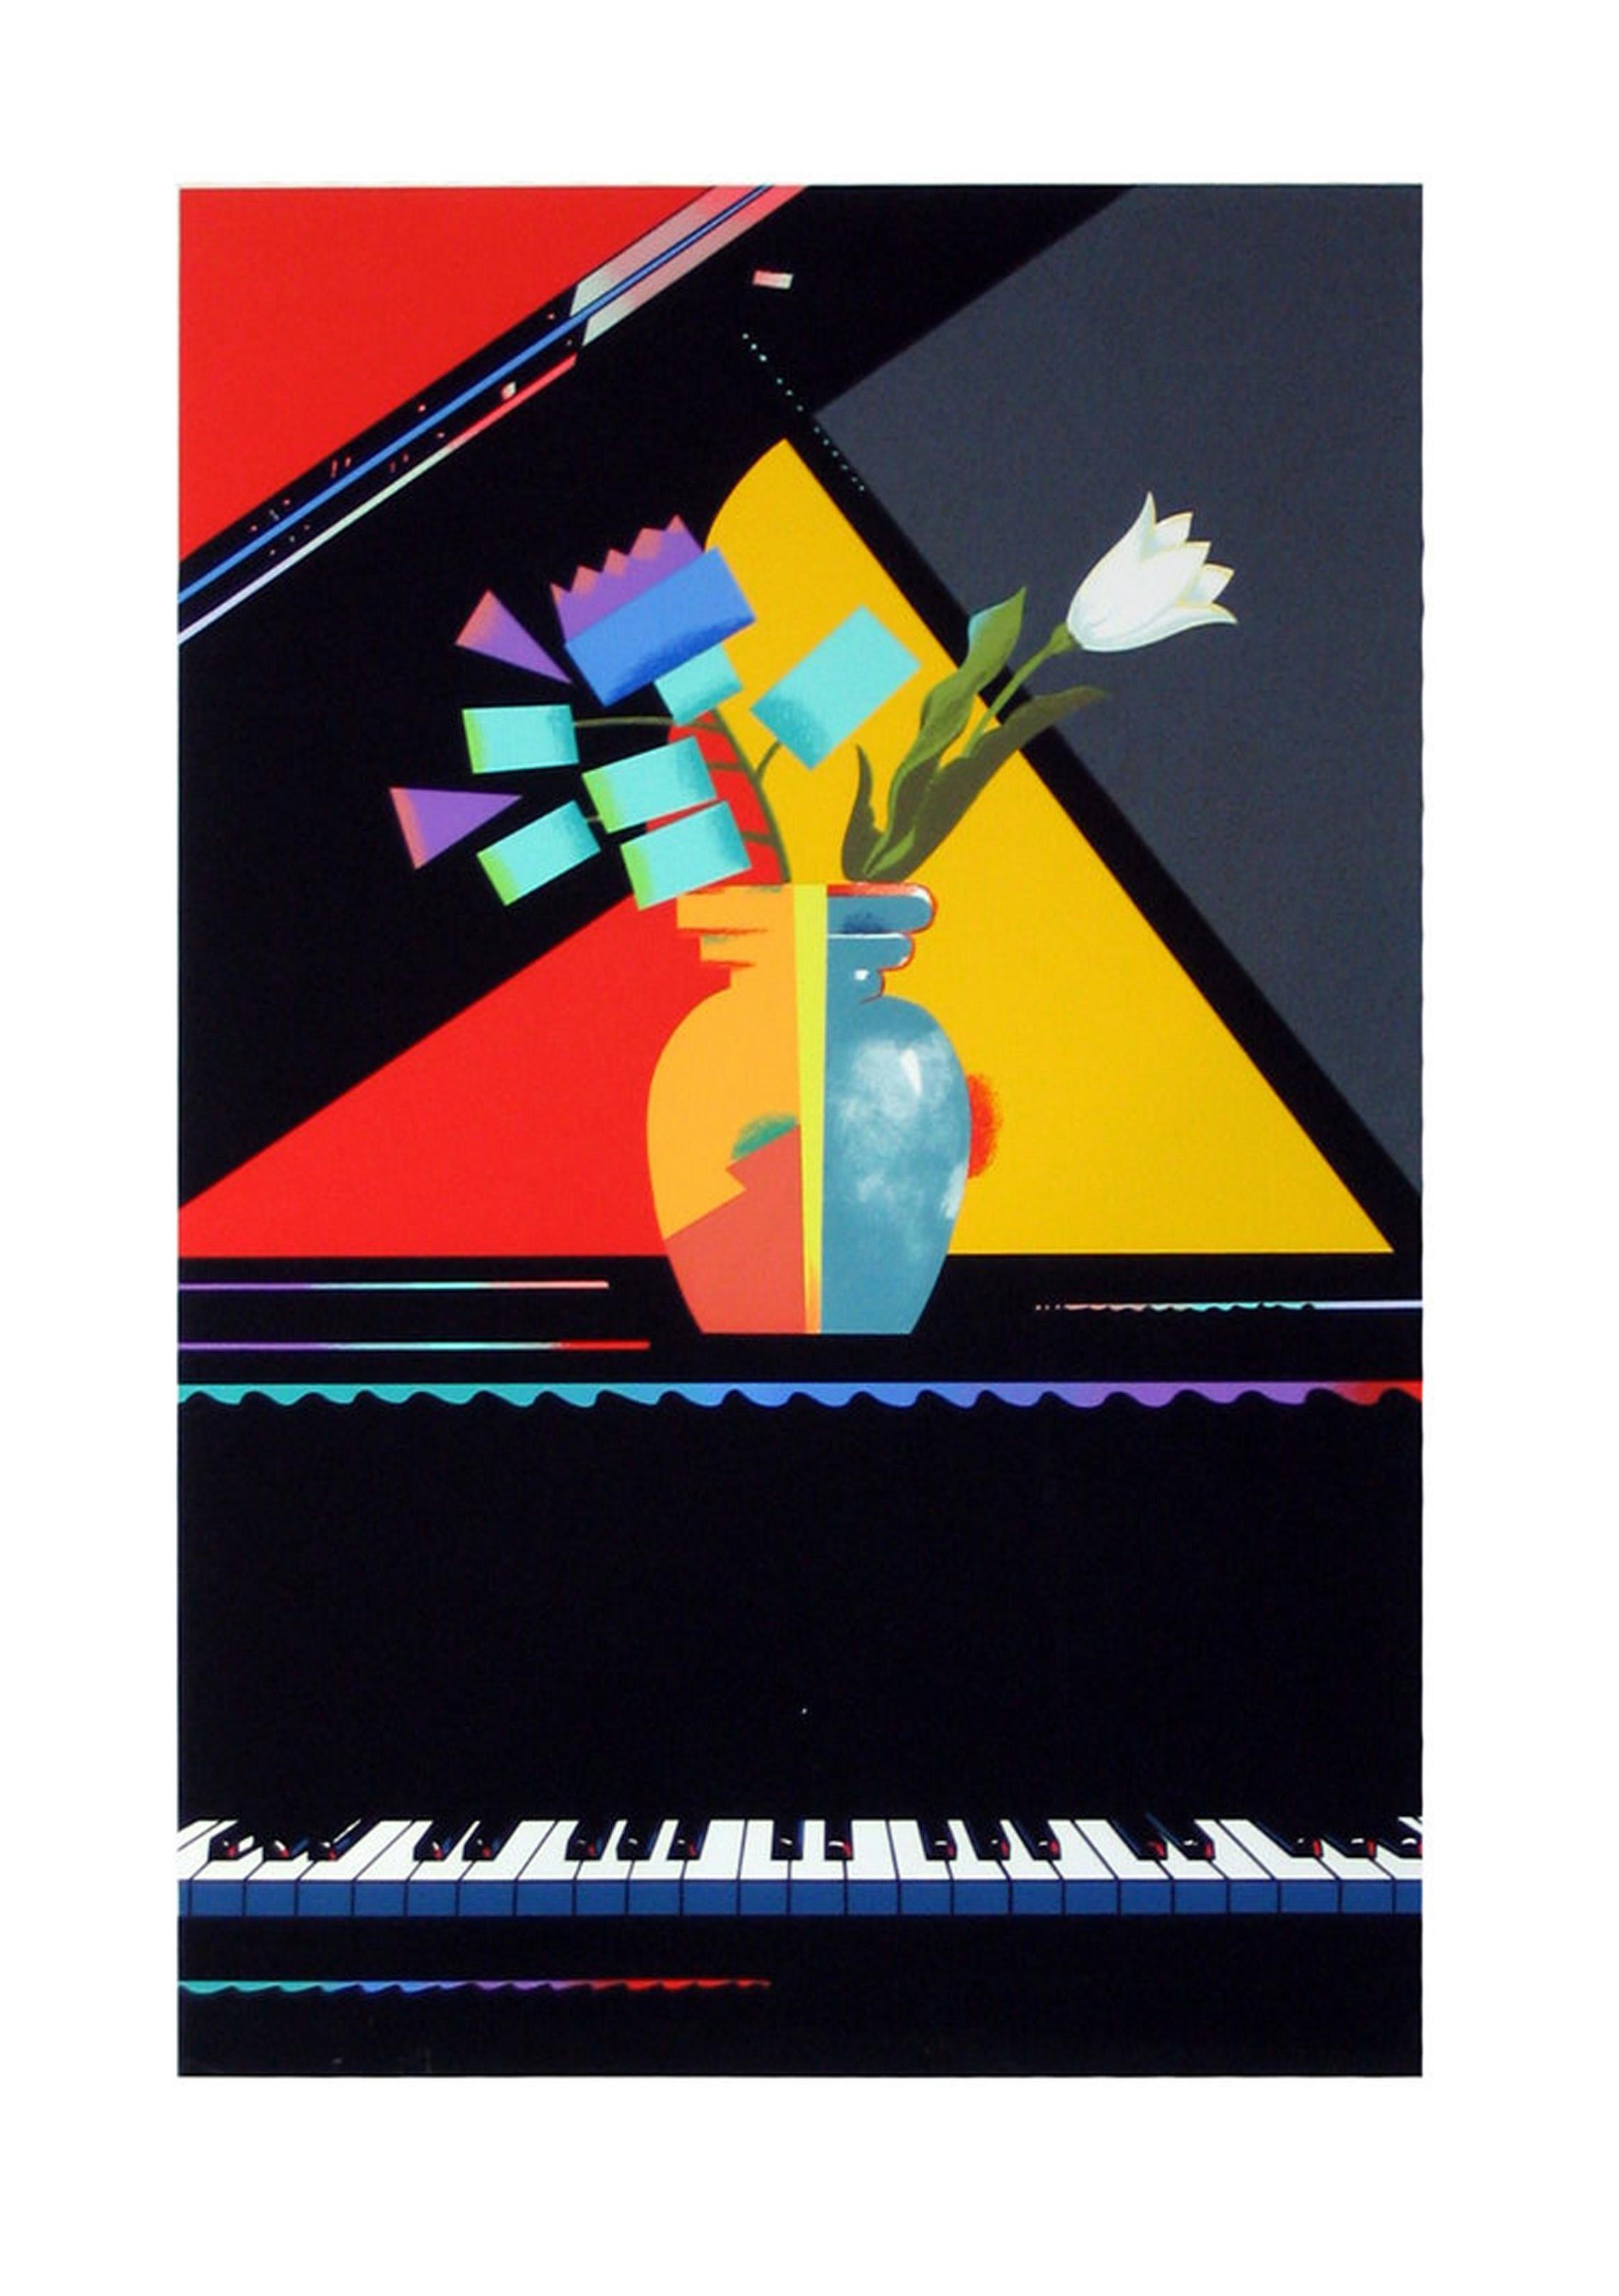 Dies ist eine kühne und geometrische Darstellung einer Blumenvase auf einem Flügel. Der Hintergrund ist sauber in die drei Farben Rot, Gelb und Grau aufgeteilt, während die Blumen und die Vase halb realistische und halb geometrisch abstrahierte